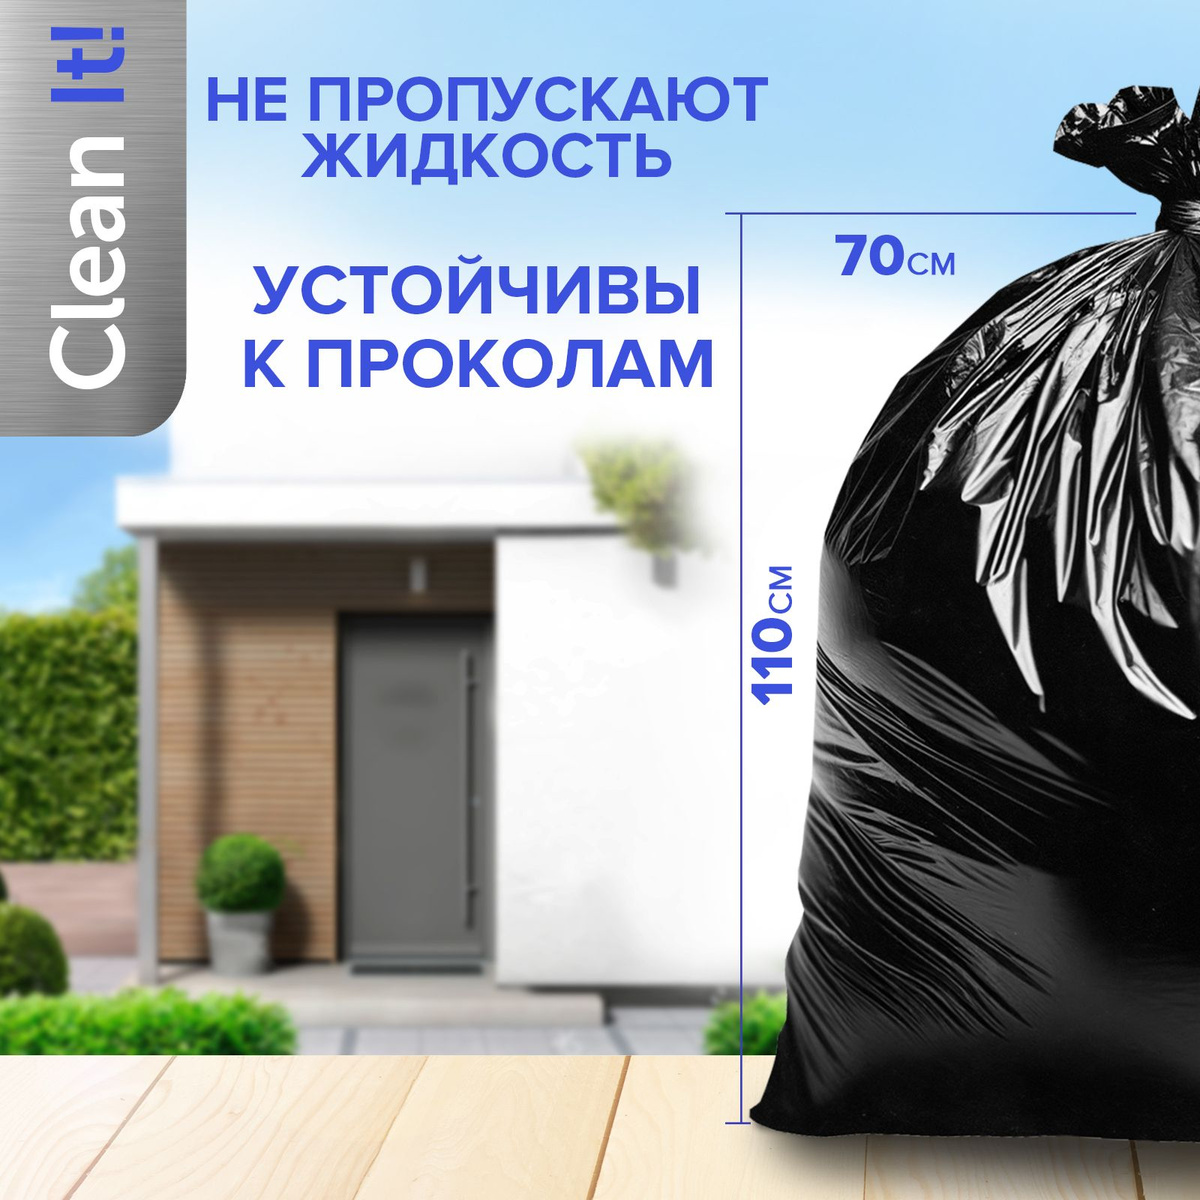 Мешки для мусора Lomberta 120 л большие, прочные, 50 штук, 1 рулон, плотные для переезда, сада и дачи, мусорные пакеты для хранения черные. Ищете надежное и удобное решение для утилизации отходов? Представляем мешки для мусора Lomberta объемом 120 литров, идеально подходящие для повседневного использования. Эти мусорные пакеты отличаются повышенной прочностью и надежностью благодаря усиленному дну, что гарантирует отсутствие протечек и разрывов даже при максимальной загрузке. В комплекте идут 50 шт., что позволит вам надолго забыть о необходимости покупать новые пакеты. Яркий фиолетовый цвет придаст стильный акцент вашей кухне или любой другой комнате, где установлена мусорная корзина. Благодаря оптимальному размеру, мешки отлично подходят как для стандартных мусорных ведер, так и для отдельных корзин, обеспечивая легкую замену и удобство использования. Пакеты для мусора от Lomberta предоставляют надежное решение для контроля за чистотой в вашем доме. Они предназначены для тех, кто ценит качество и долговечность. Независимо от того, используете ли вы пакеты для бытовых отходов или в процессе уборки, эти мешки обеспечат вам необходимую надежность. Закажите их сейчас и убедитесь сами, что качественный пакет для мусора может значительно упростить вашу повседневную жизнь.